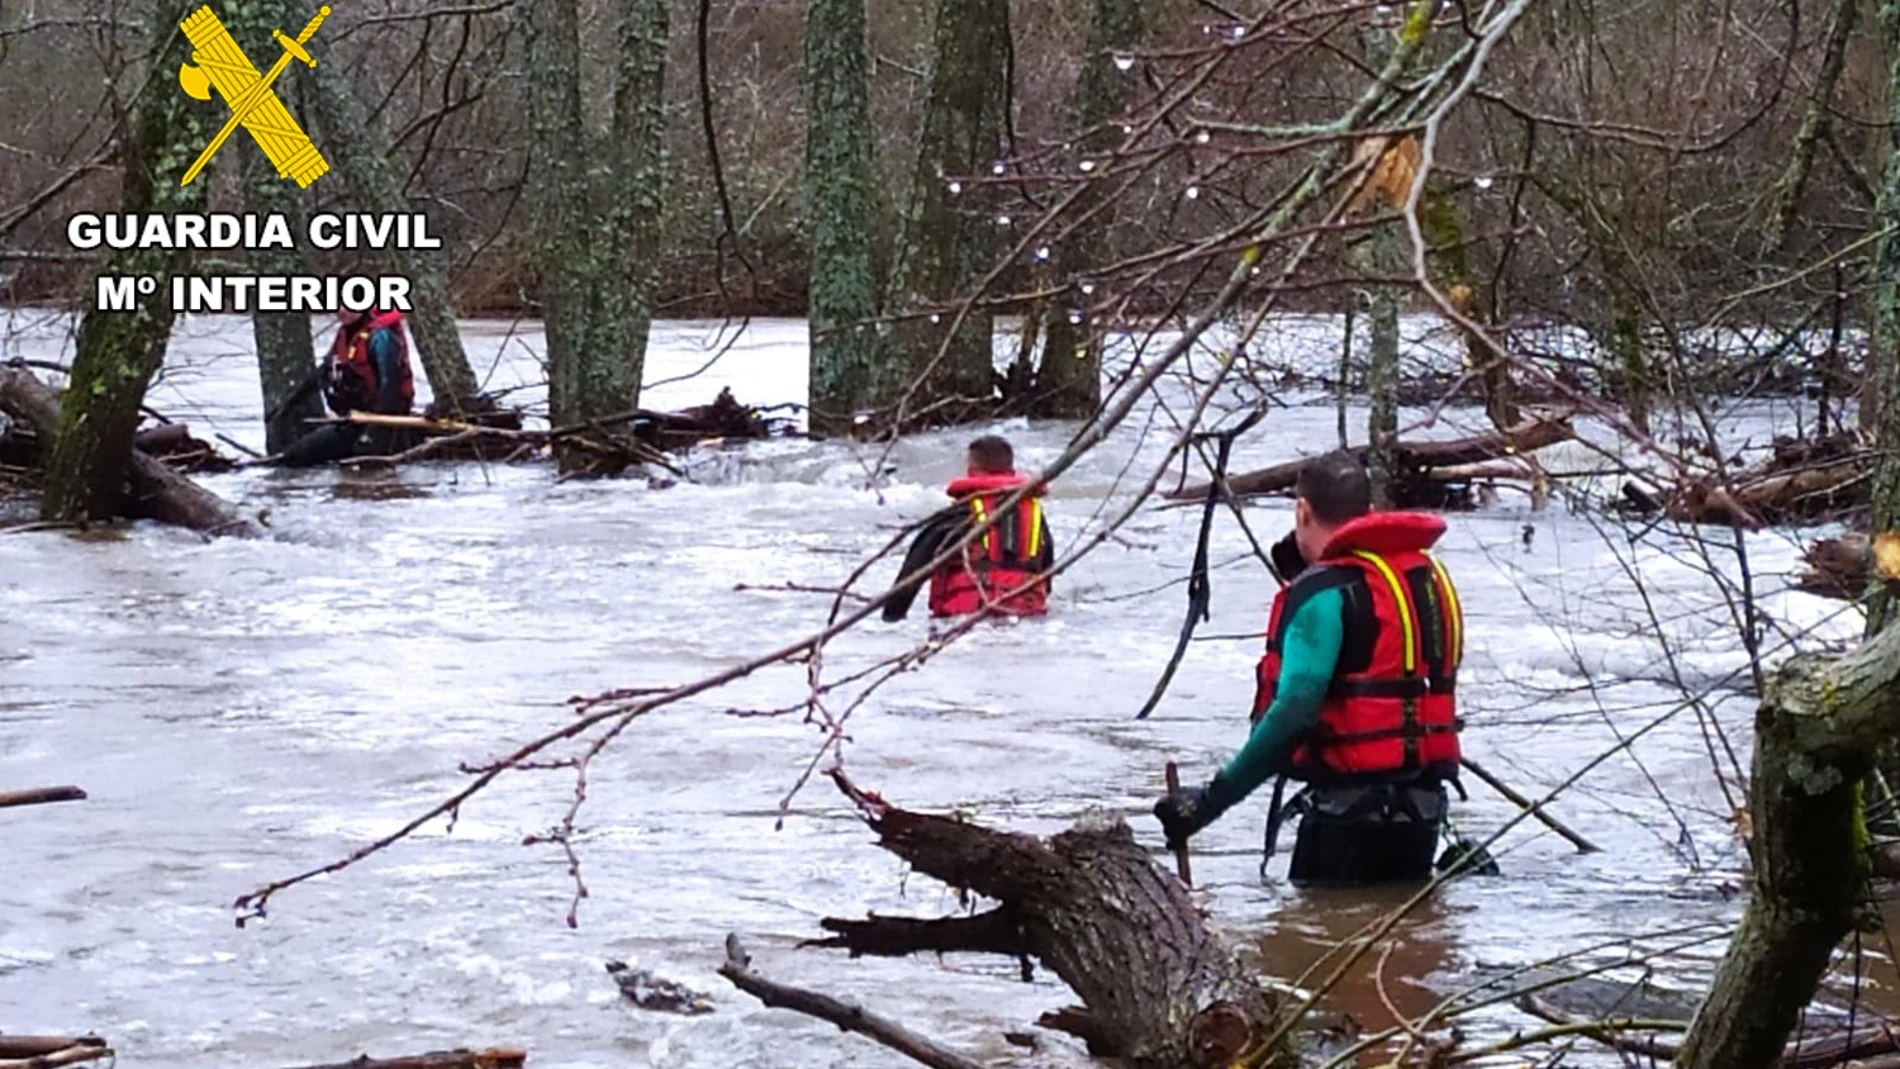  Efectivos de la Guardia Civil buscan a un hombre en el río Arlanza, en la localidad de Villahoz (Burgos)